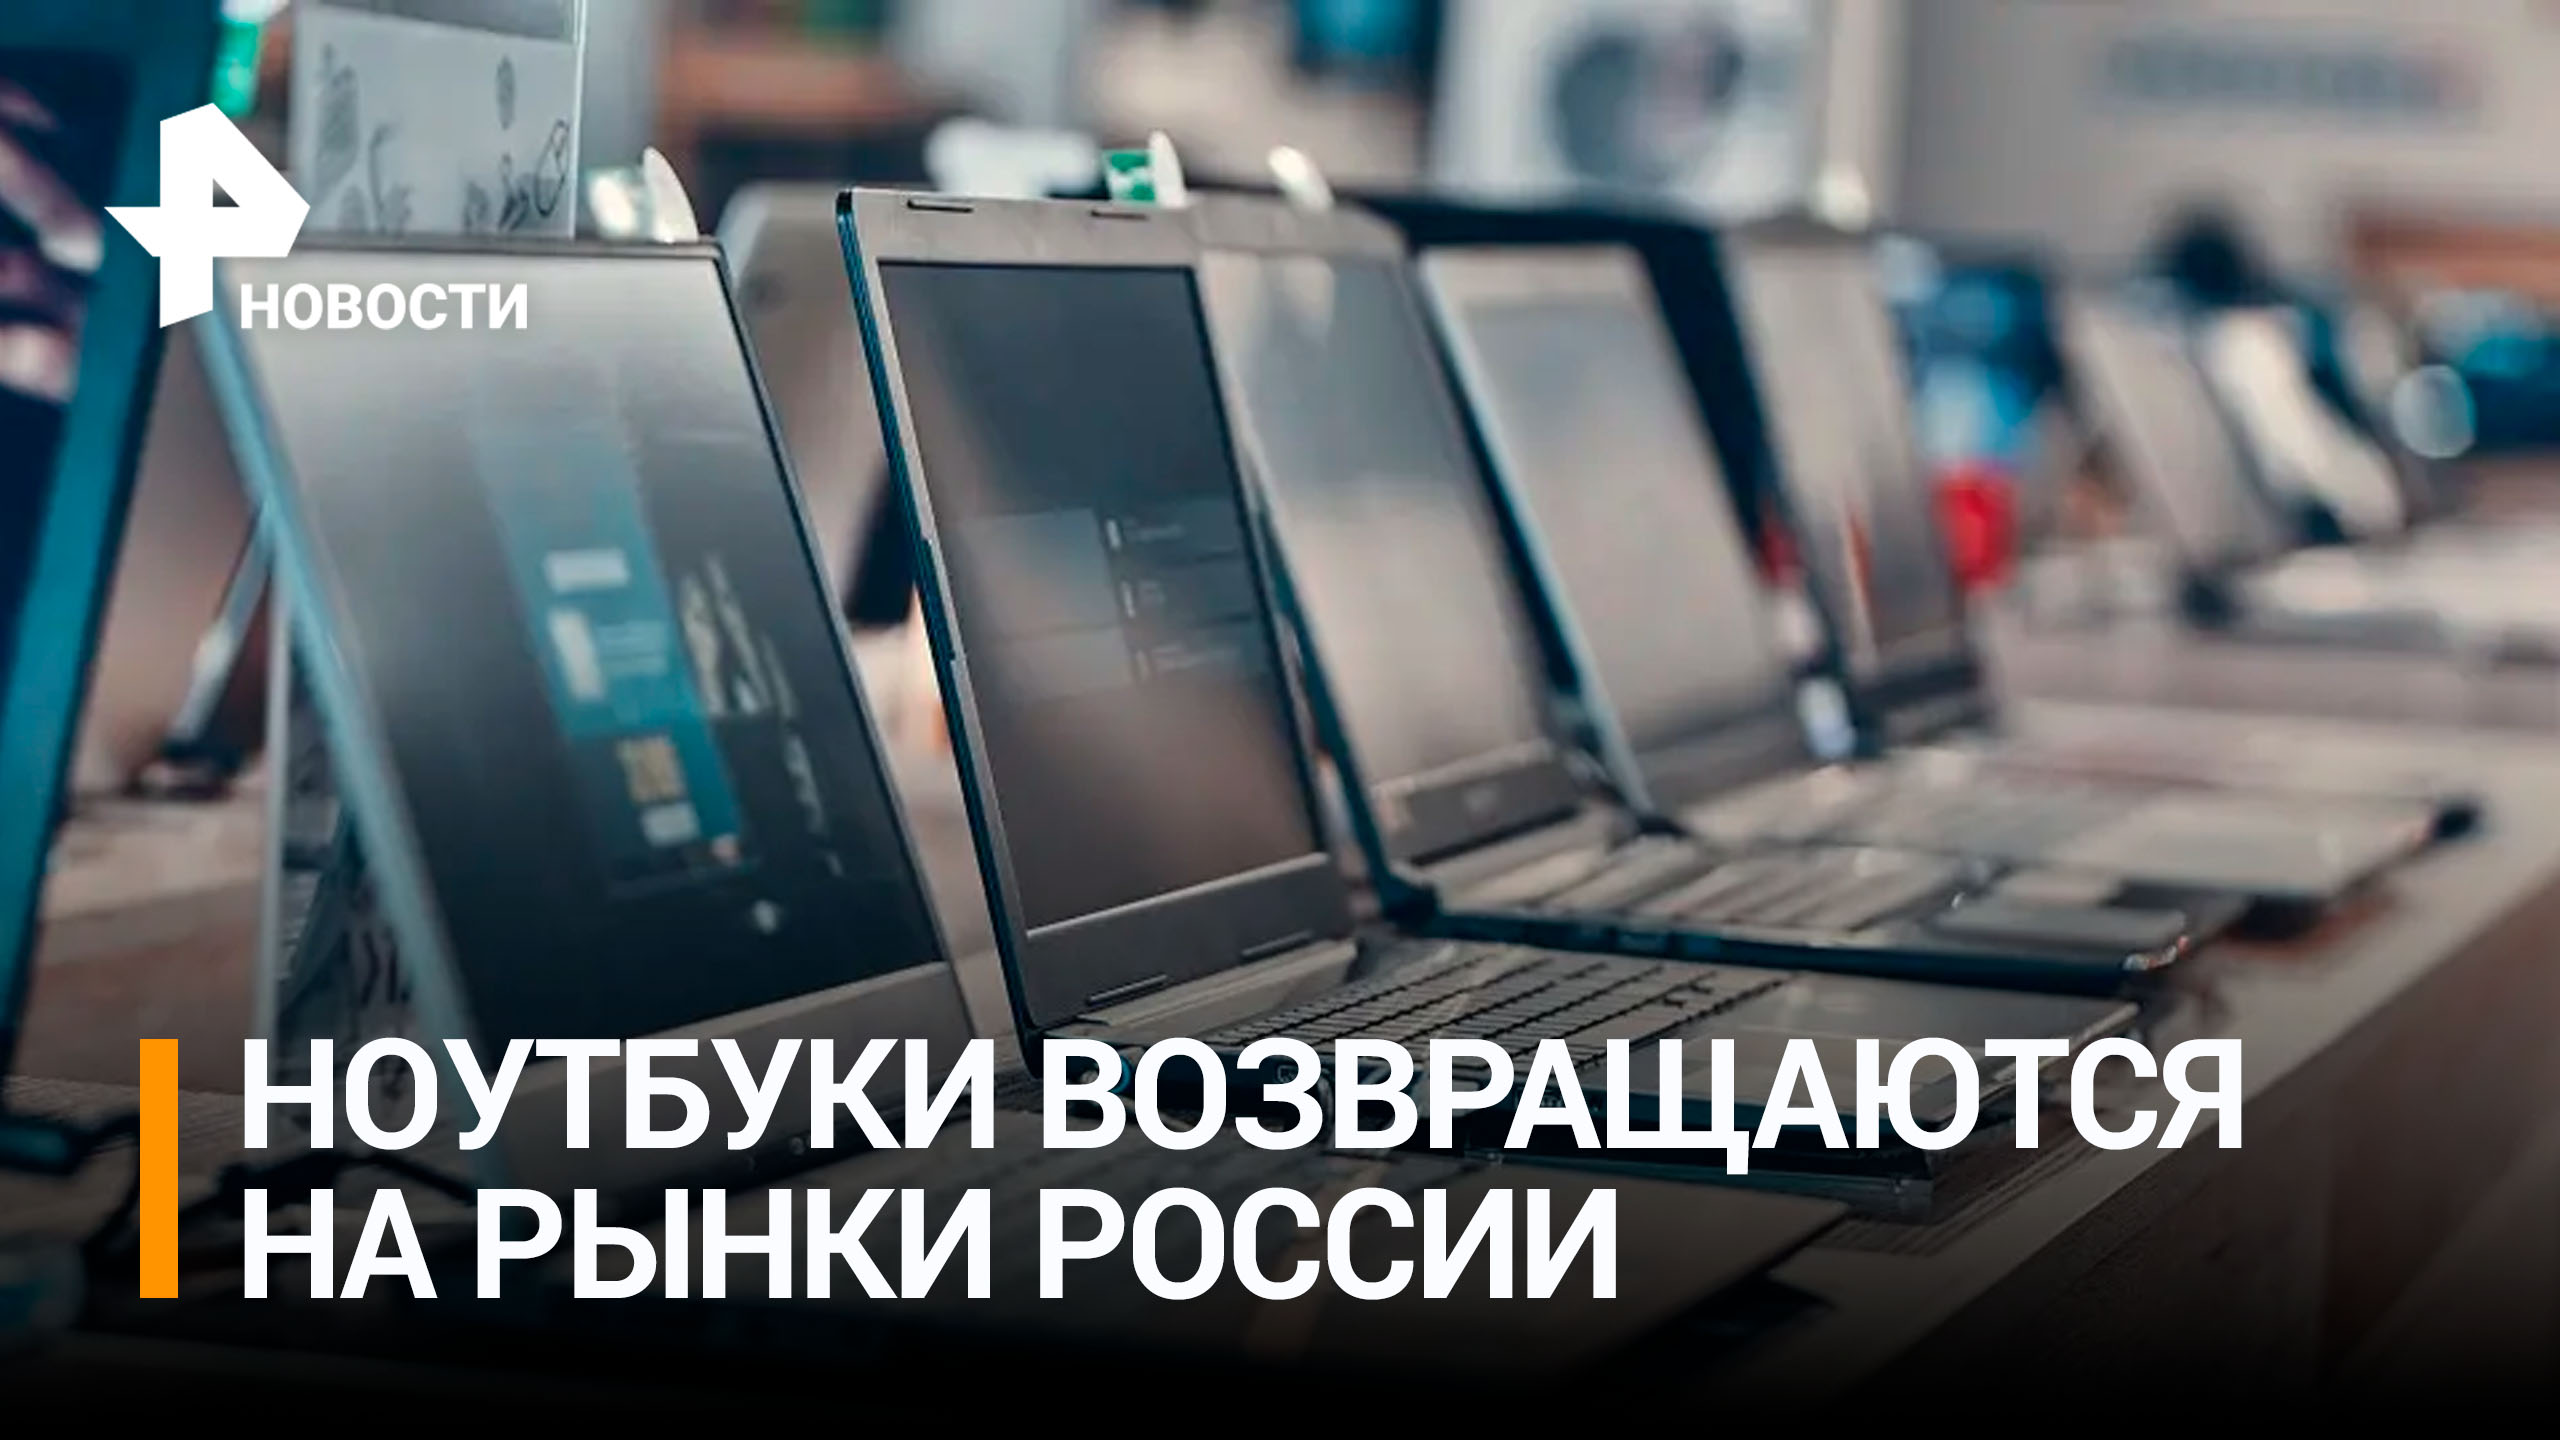 Иностранные ноутбуки возвращаются на российский рынок / РЕН Новости